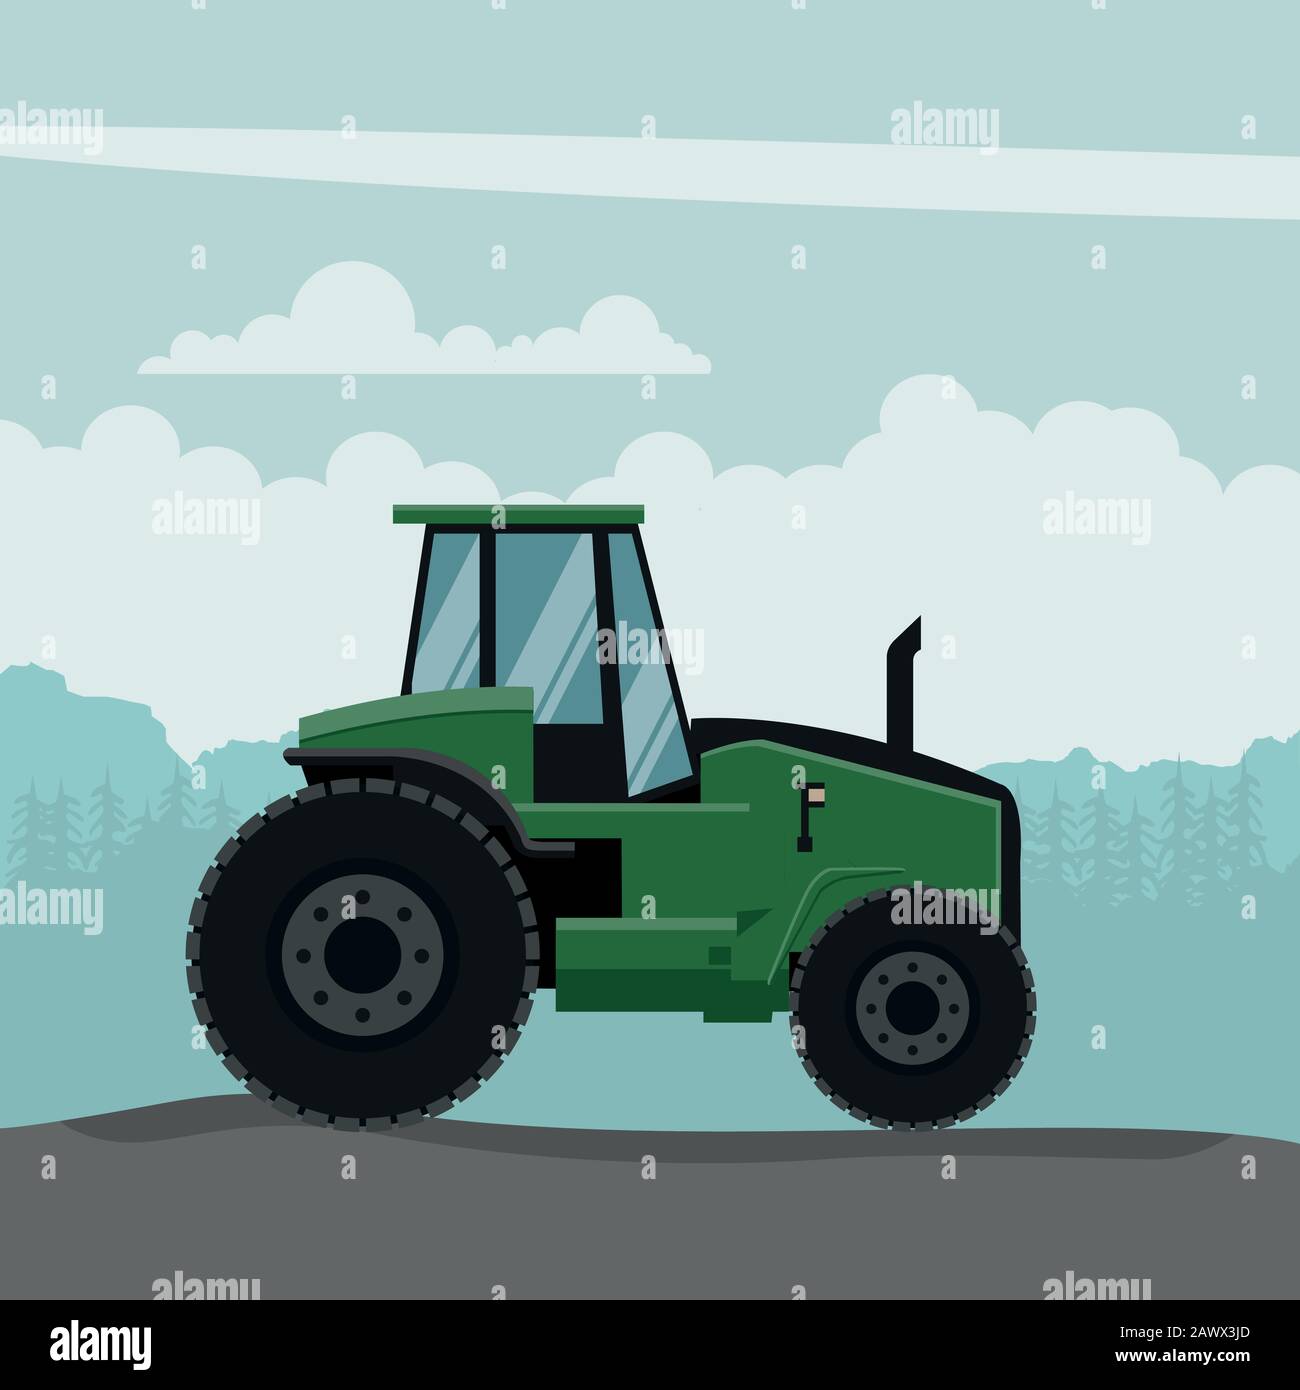 Vektor-Design des landwirtschaftlichen Traktors. Schwere Landmaschinen für die Landarbeit Stock Vektor